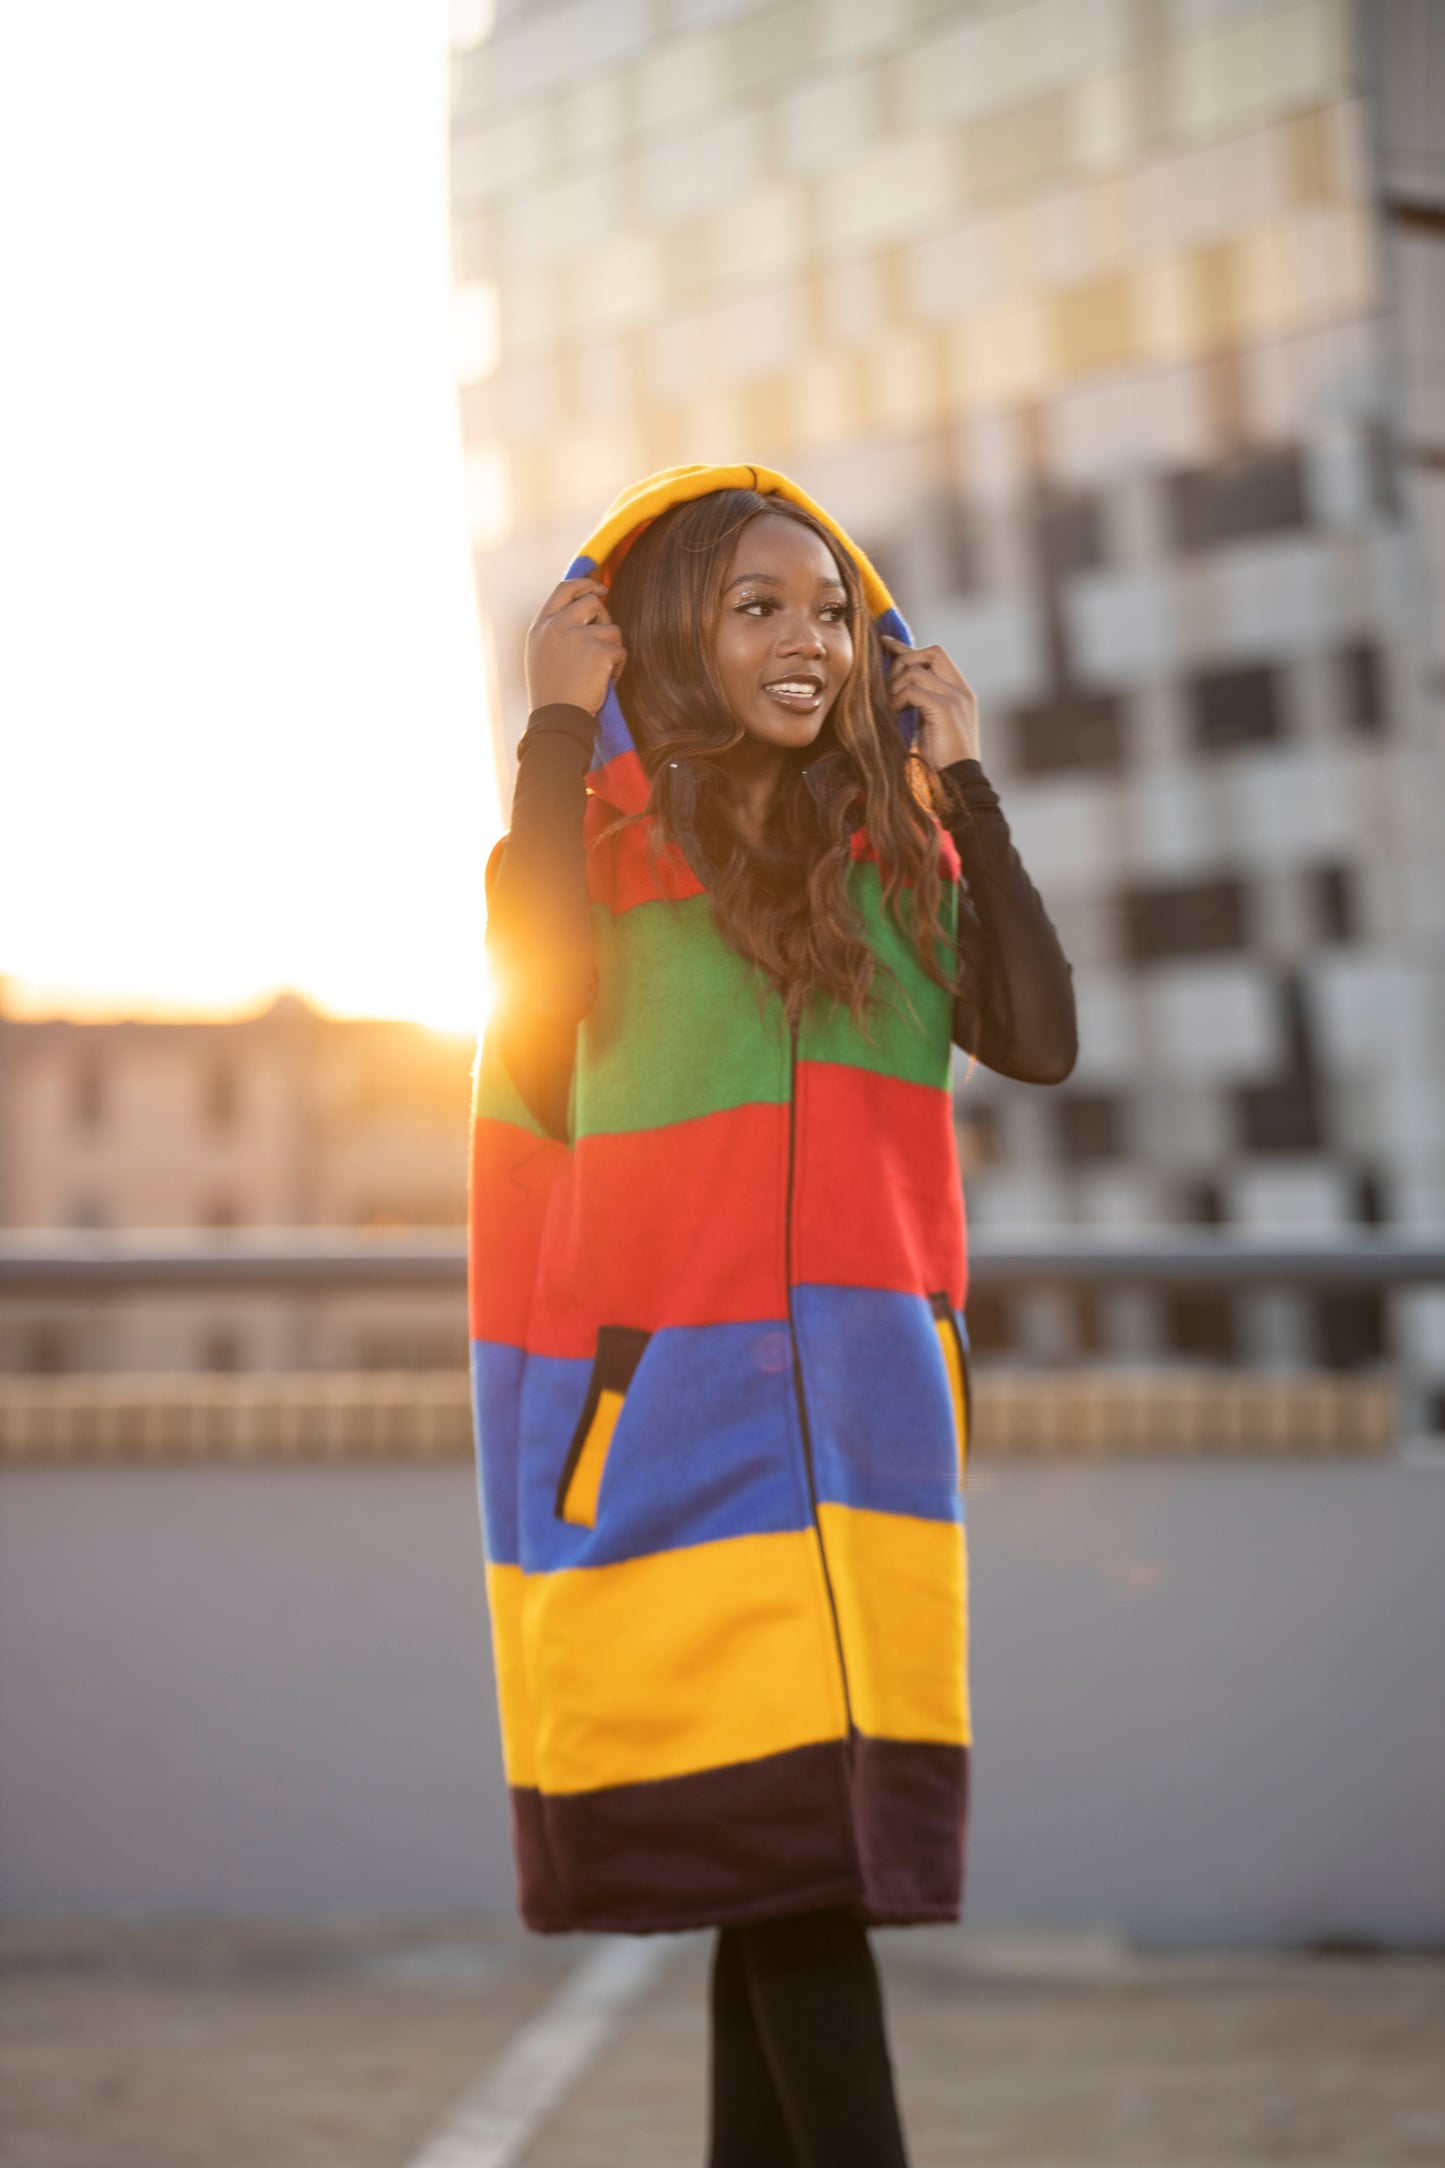 Ndebele Aranda Blanket Jacket - Sleeveless with detachable hood